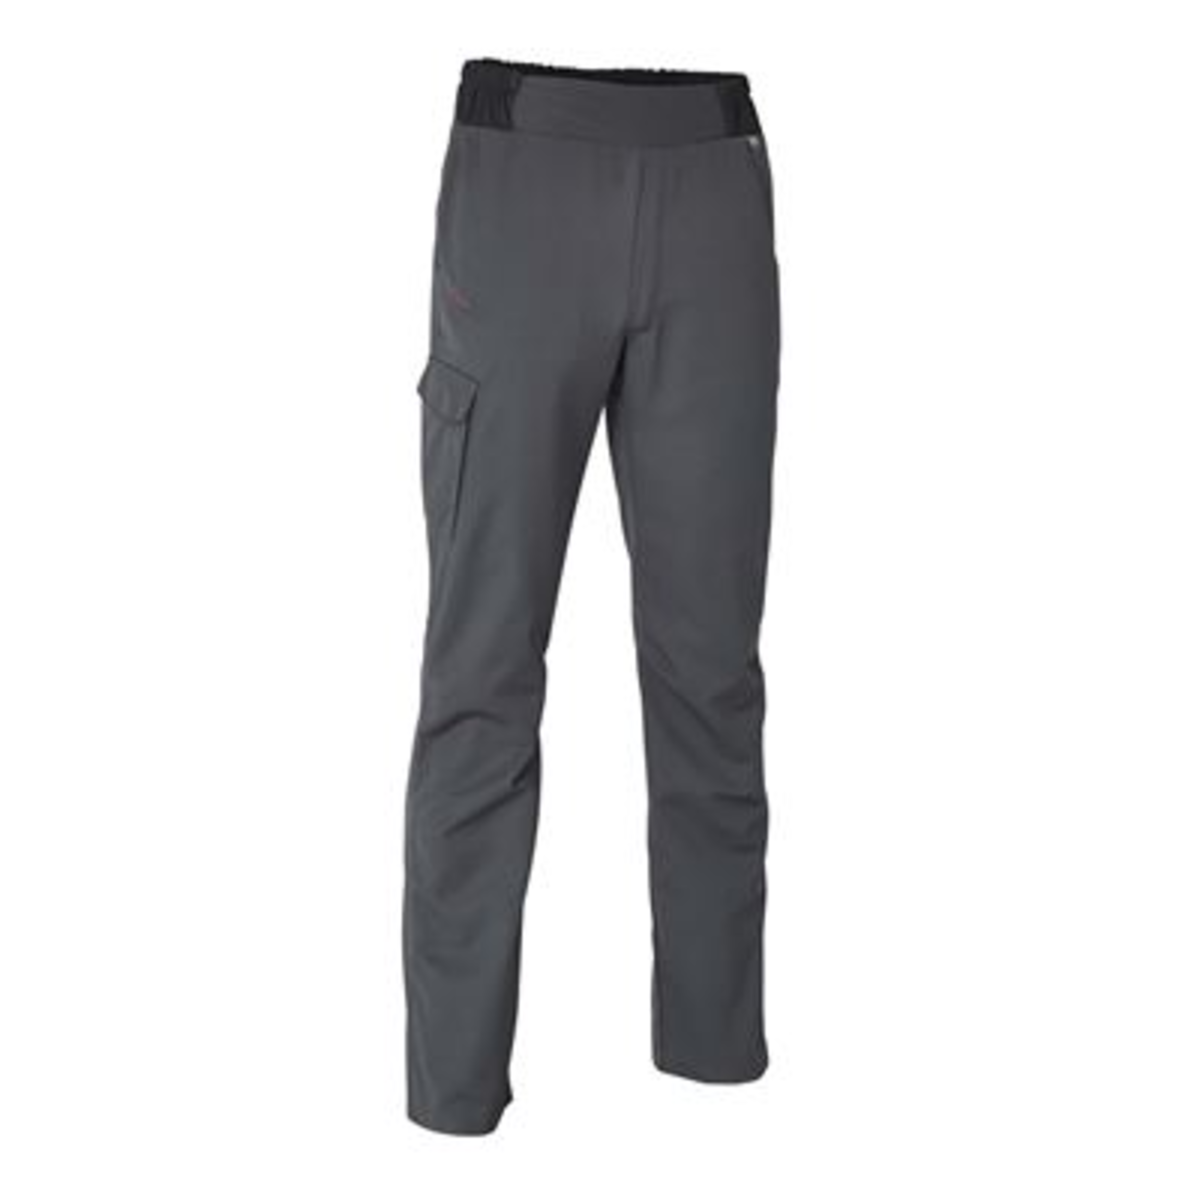 Pantalon de service homme Flex'R gris anthracite T.3 - Molinel - 1193281027